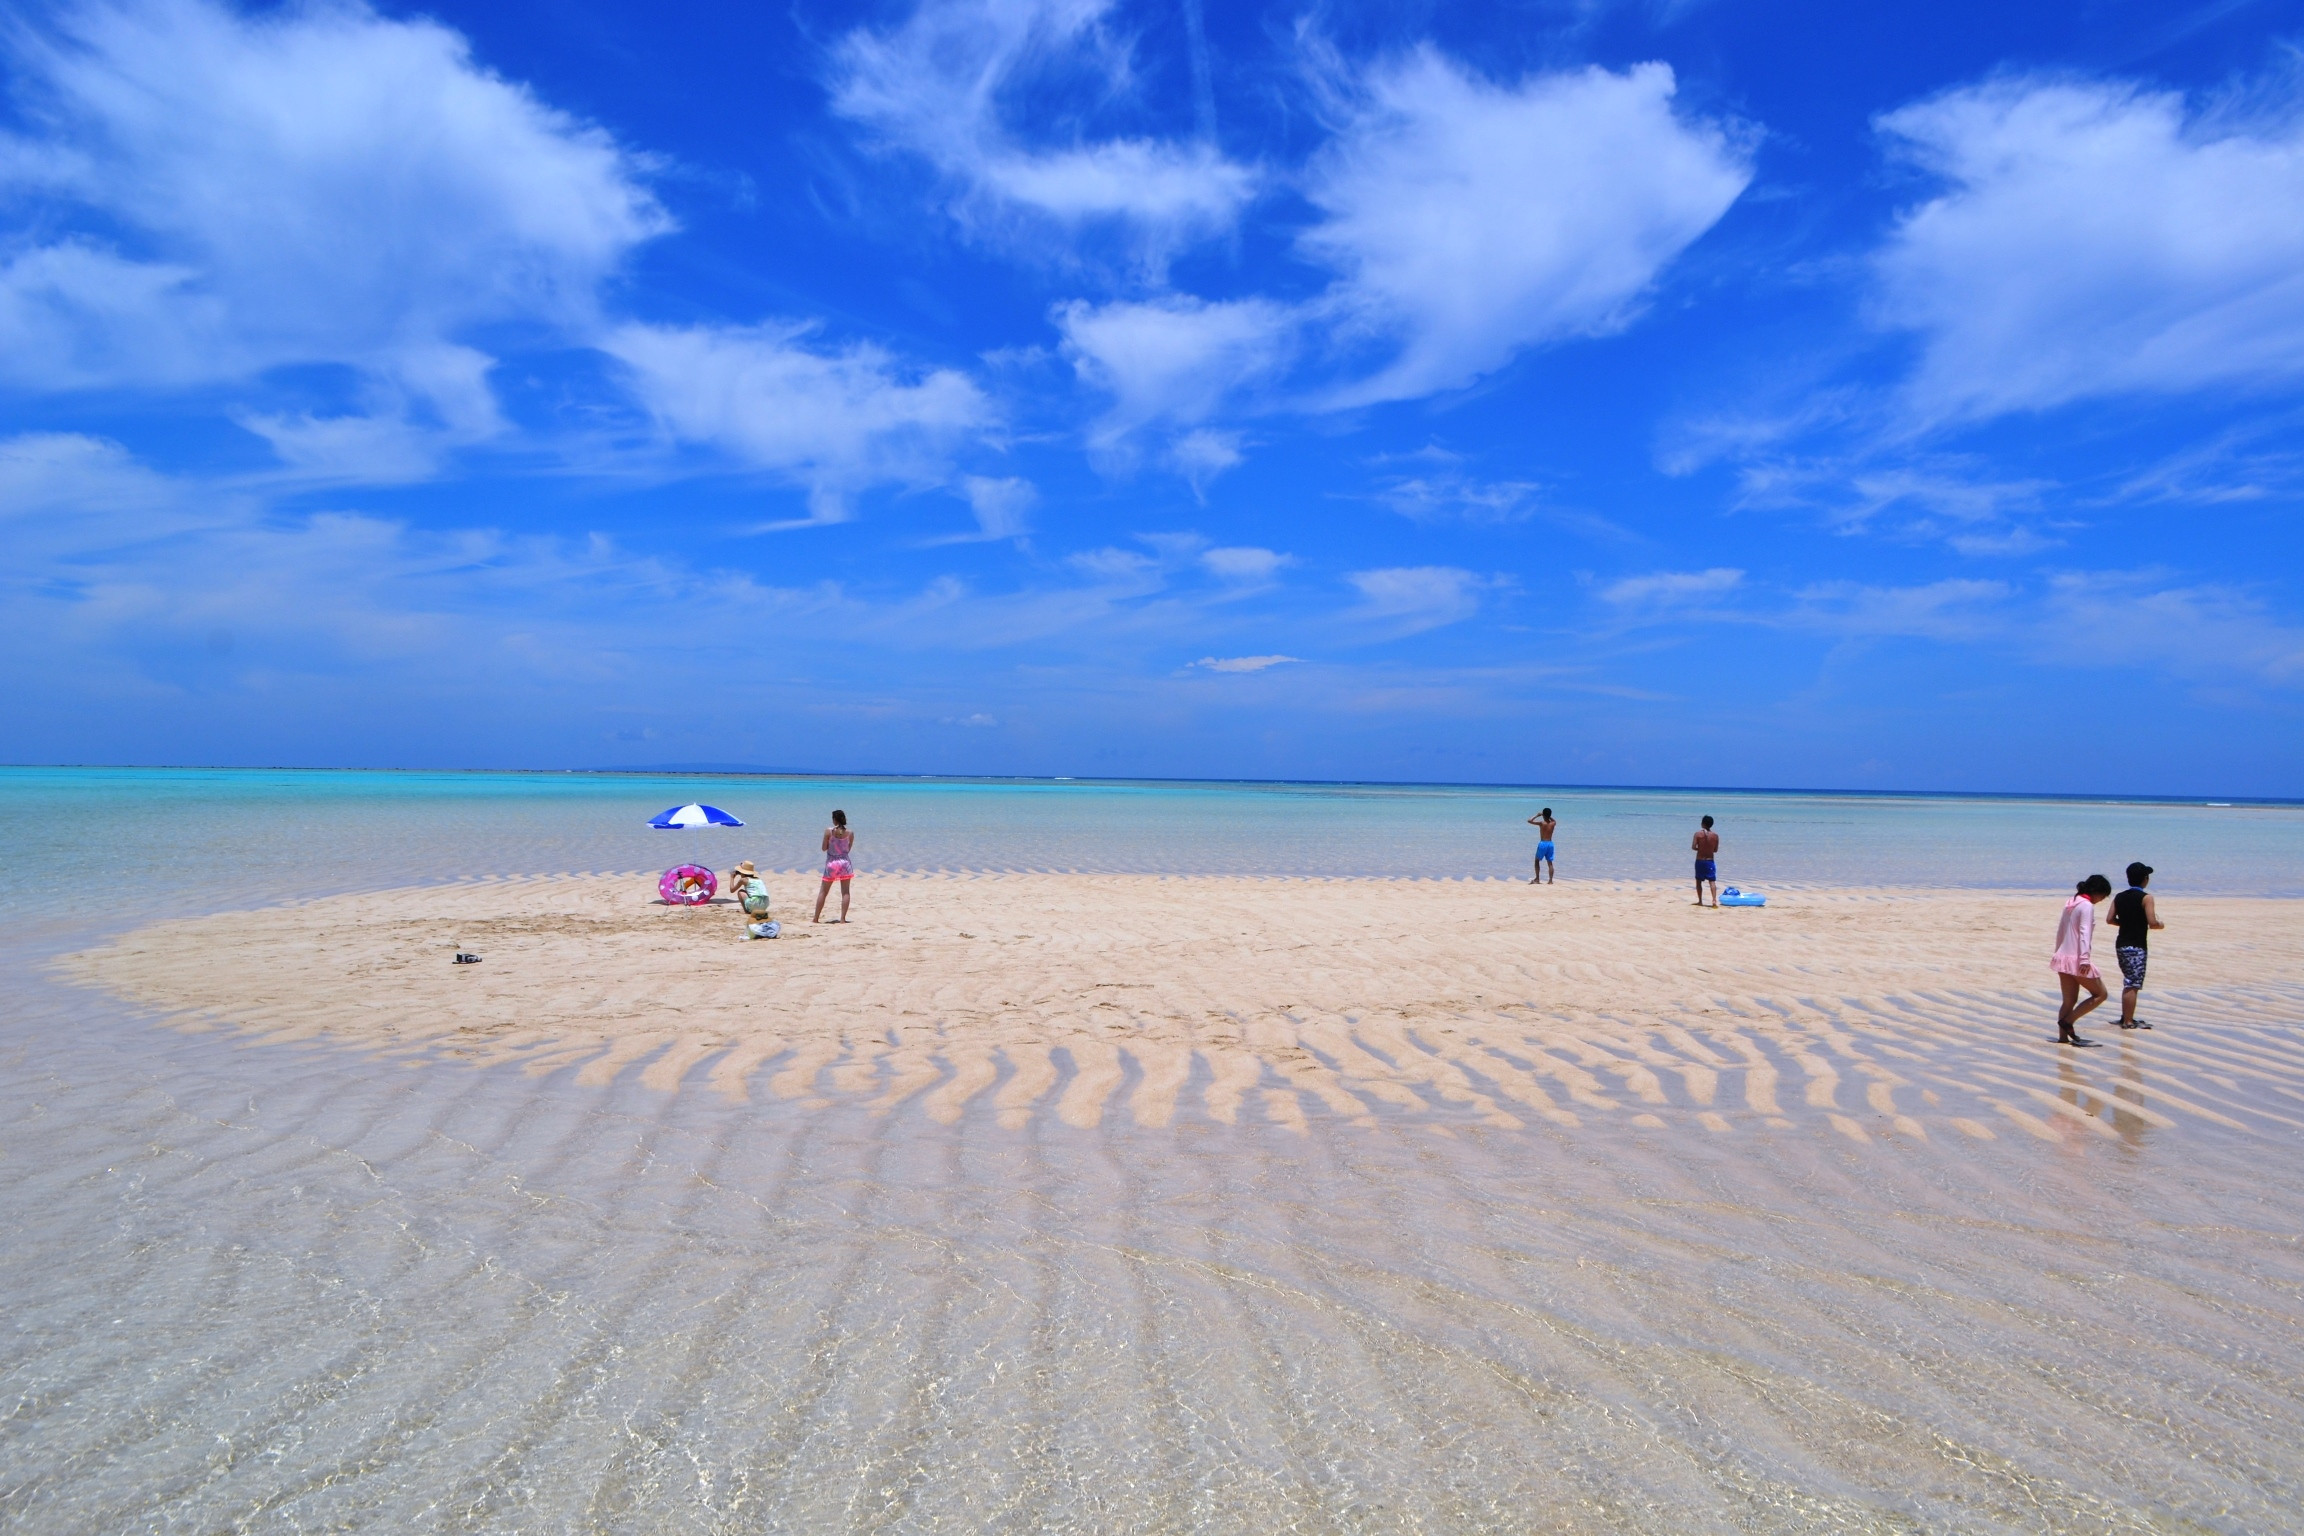 幻の白い砂浜「百合ヶ浜」とは ・・・・春から夏にかけて 大潮から中潮の干潮の時間帯に海岸から沖合い1.5キロに出現する白い砂浜！！  